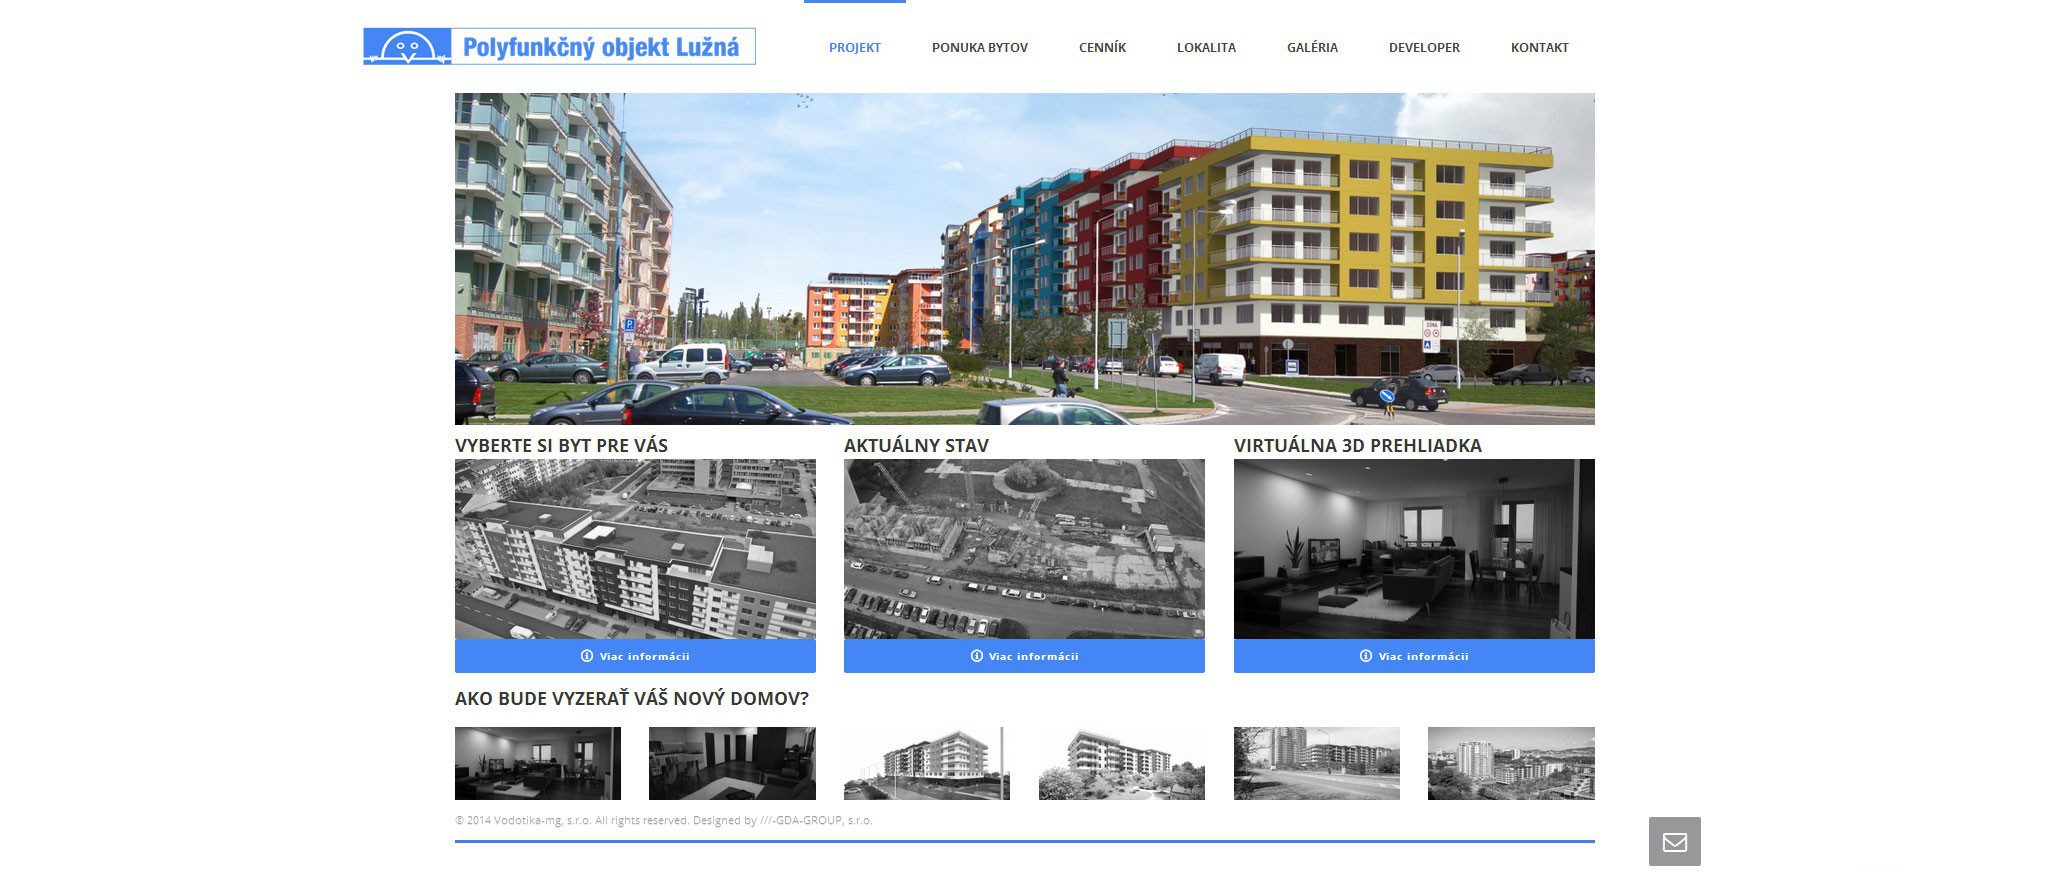 Образование веб-сайтов - VODOTIKA MG - домашняя страница